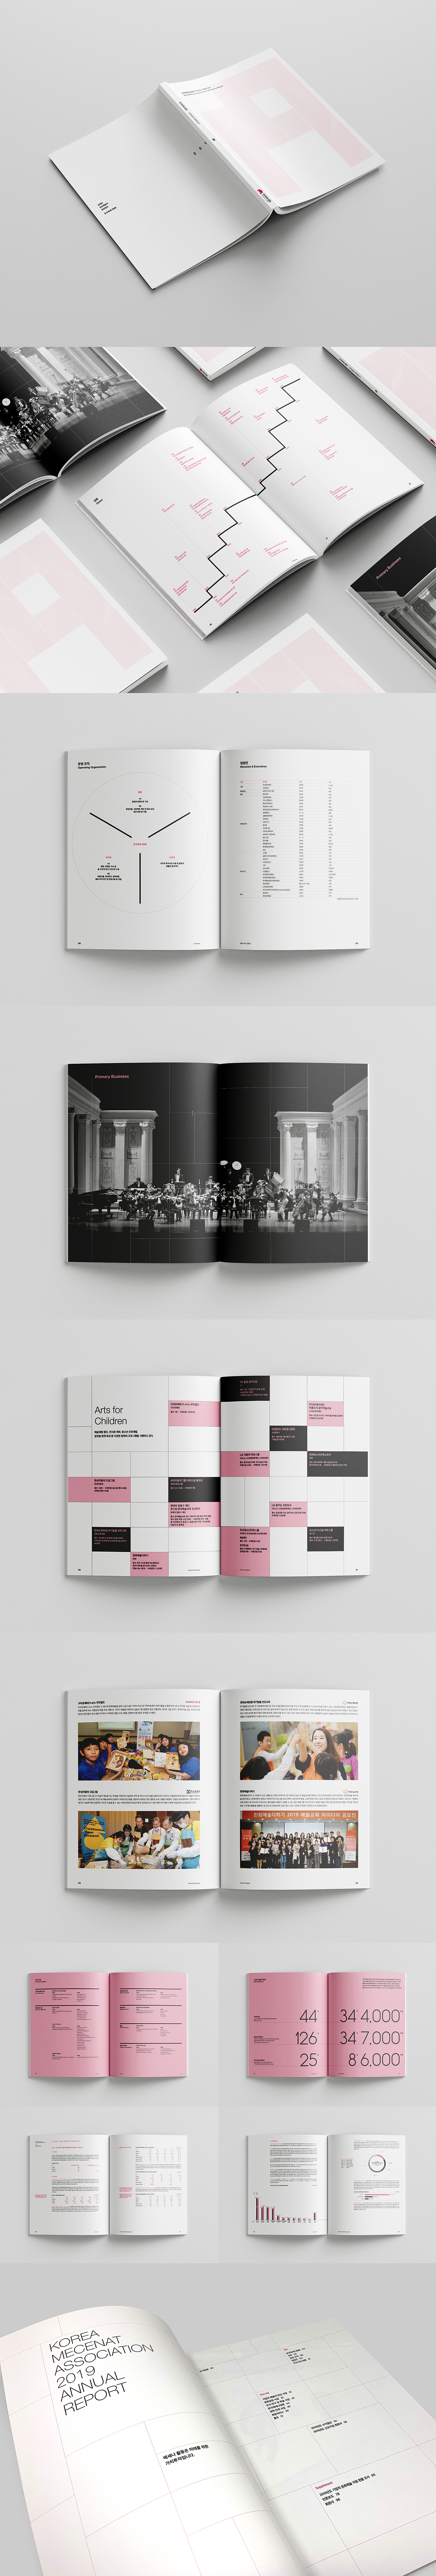 韩国Mecenat协会公共关系年度画册设计